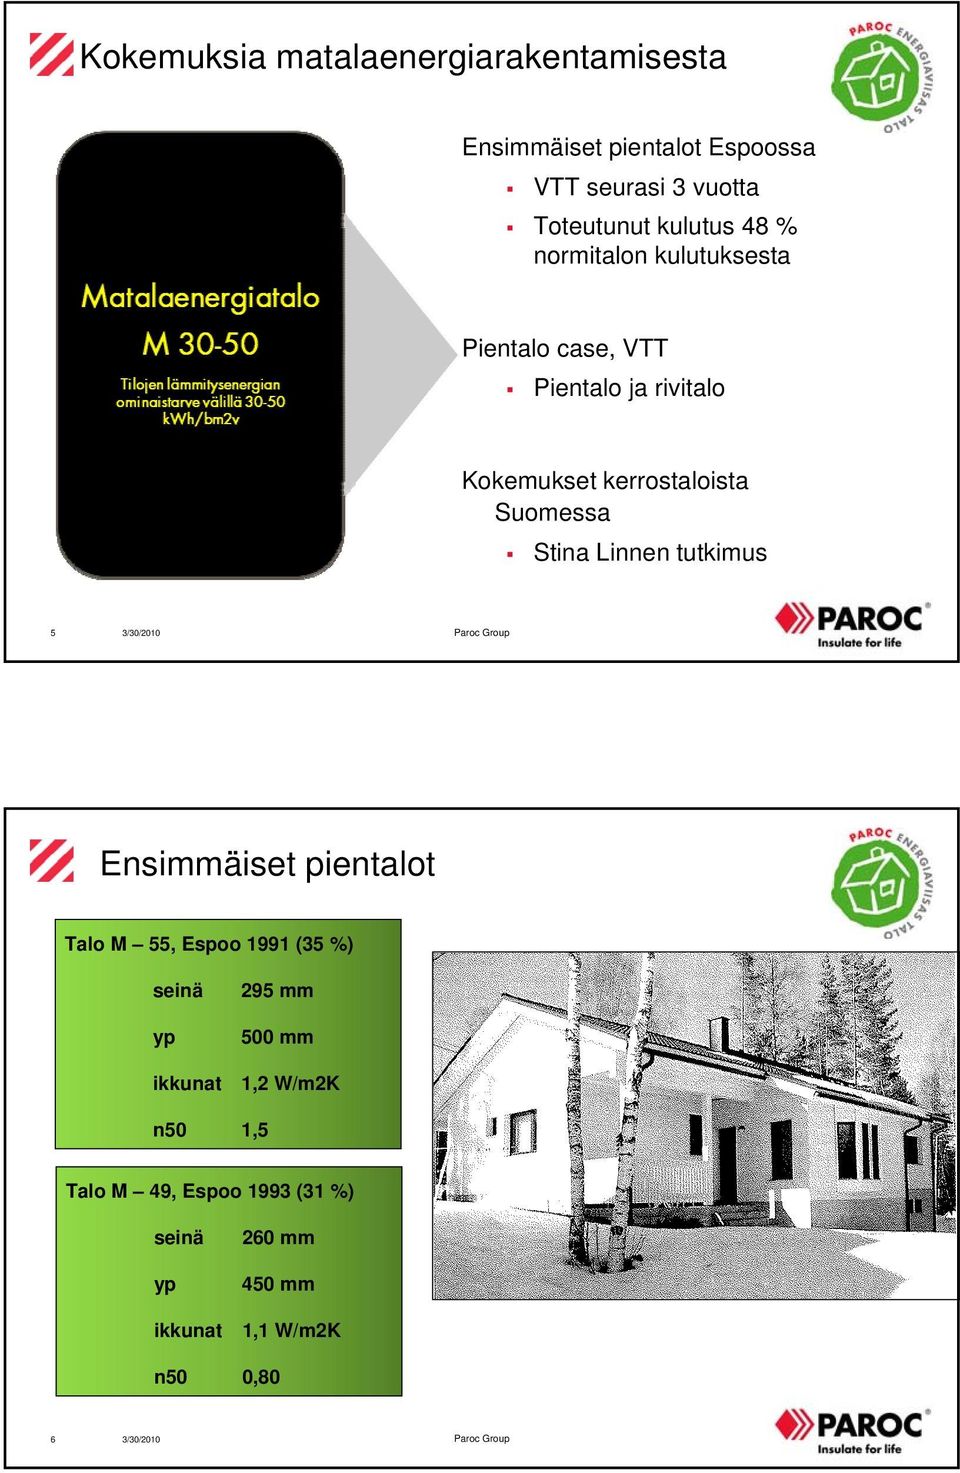 Suomessa Stina Linnen tutkimus 5 Ensimmäiset pientalot Talo M 55, Espoo 1991 (35 %) seinä yp ikkunat 295